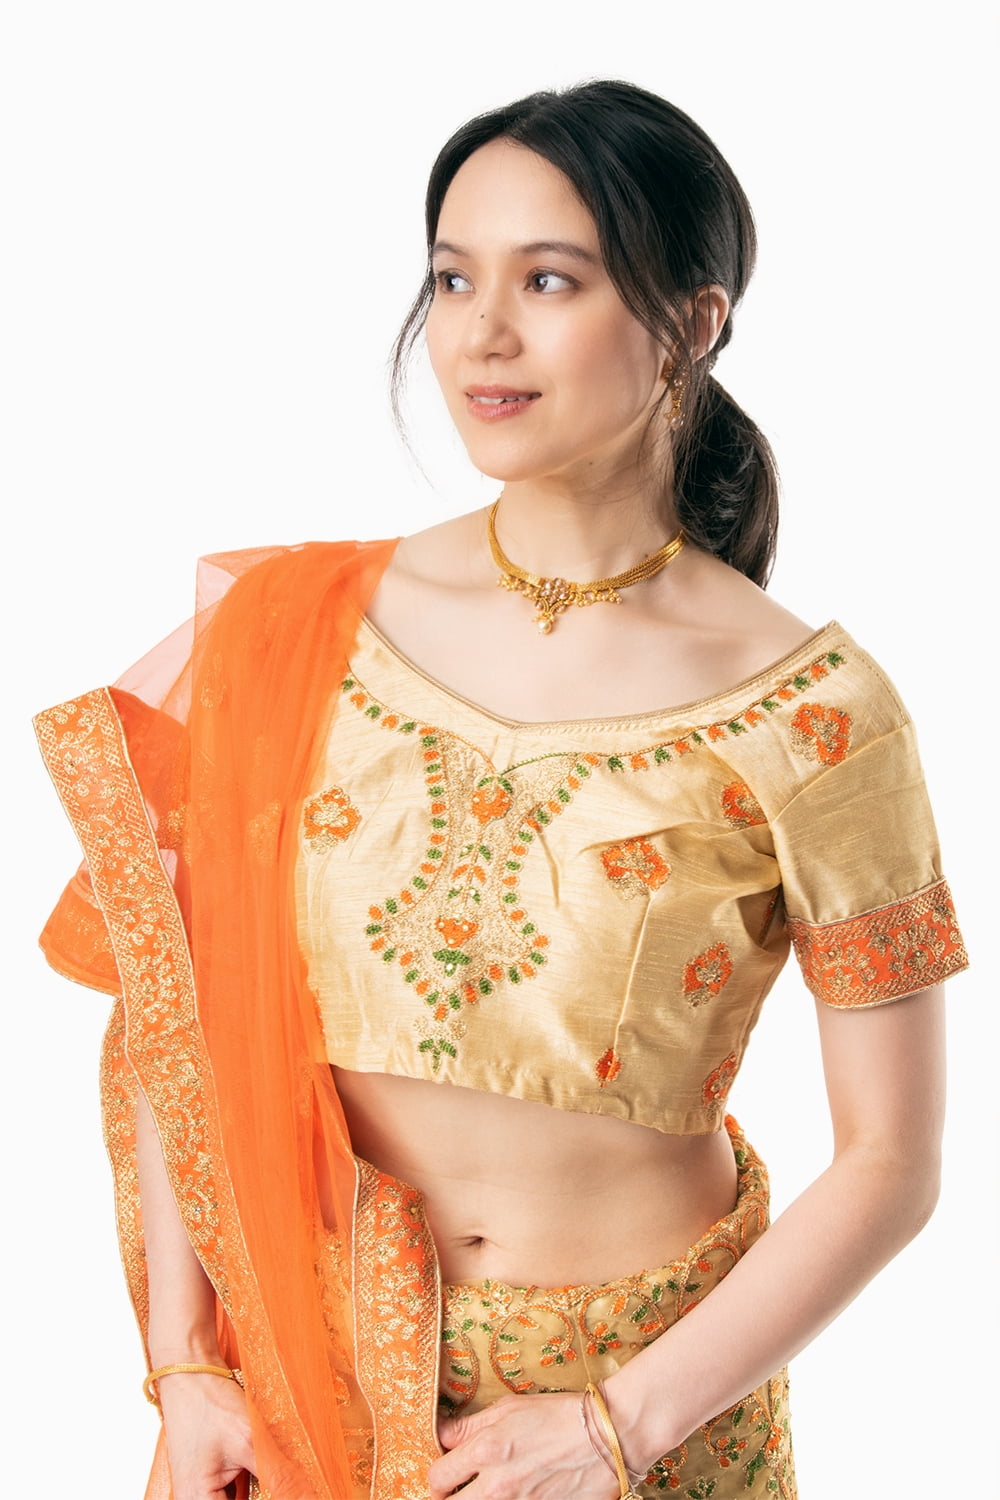 インドのレヘンガ パーティードレス コスプレ ティラキタ 女性物 エスニックファッション アジアンファッション エスニック衣料 TIRAKITA  サリー ウェディング レディース